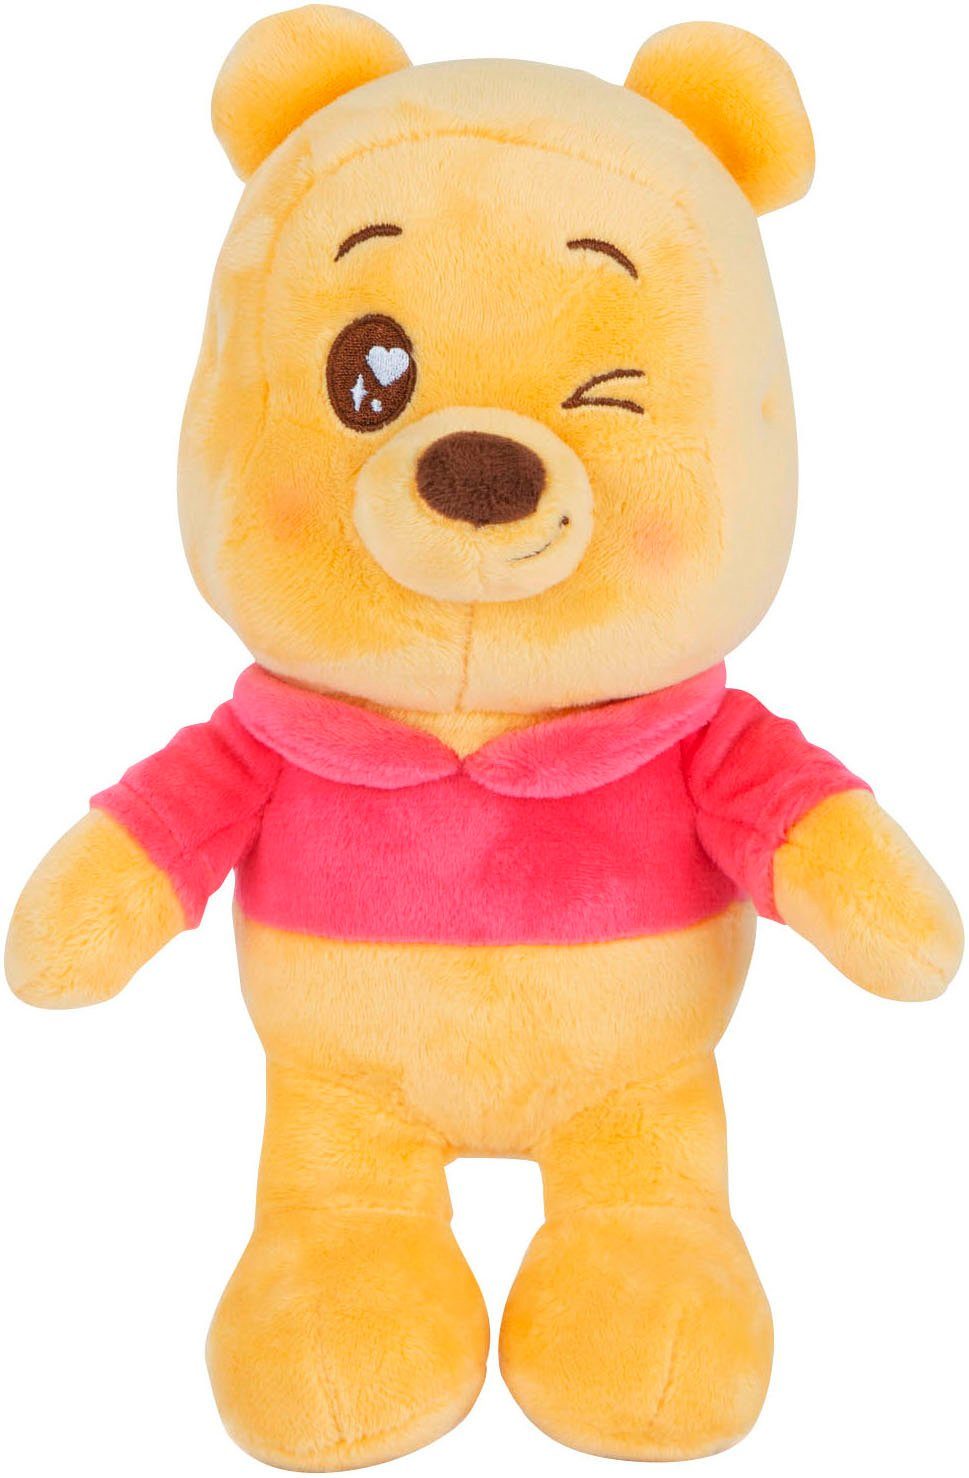 SIMBA Plüschfigur Disney, Winnie the Pooh Twinkle Eye Puh Plüsch, 25 cm